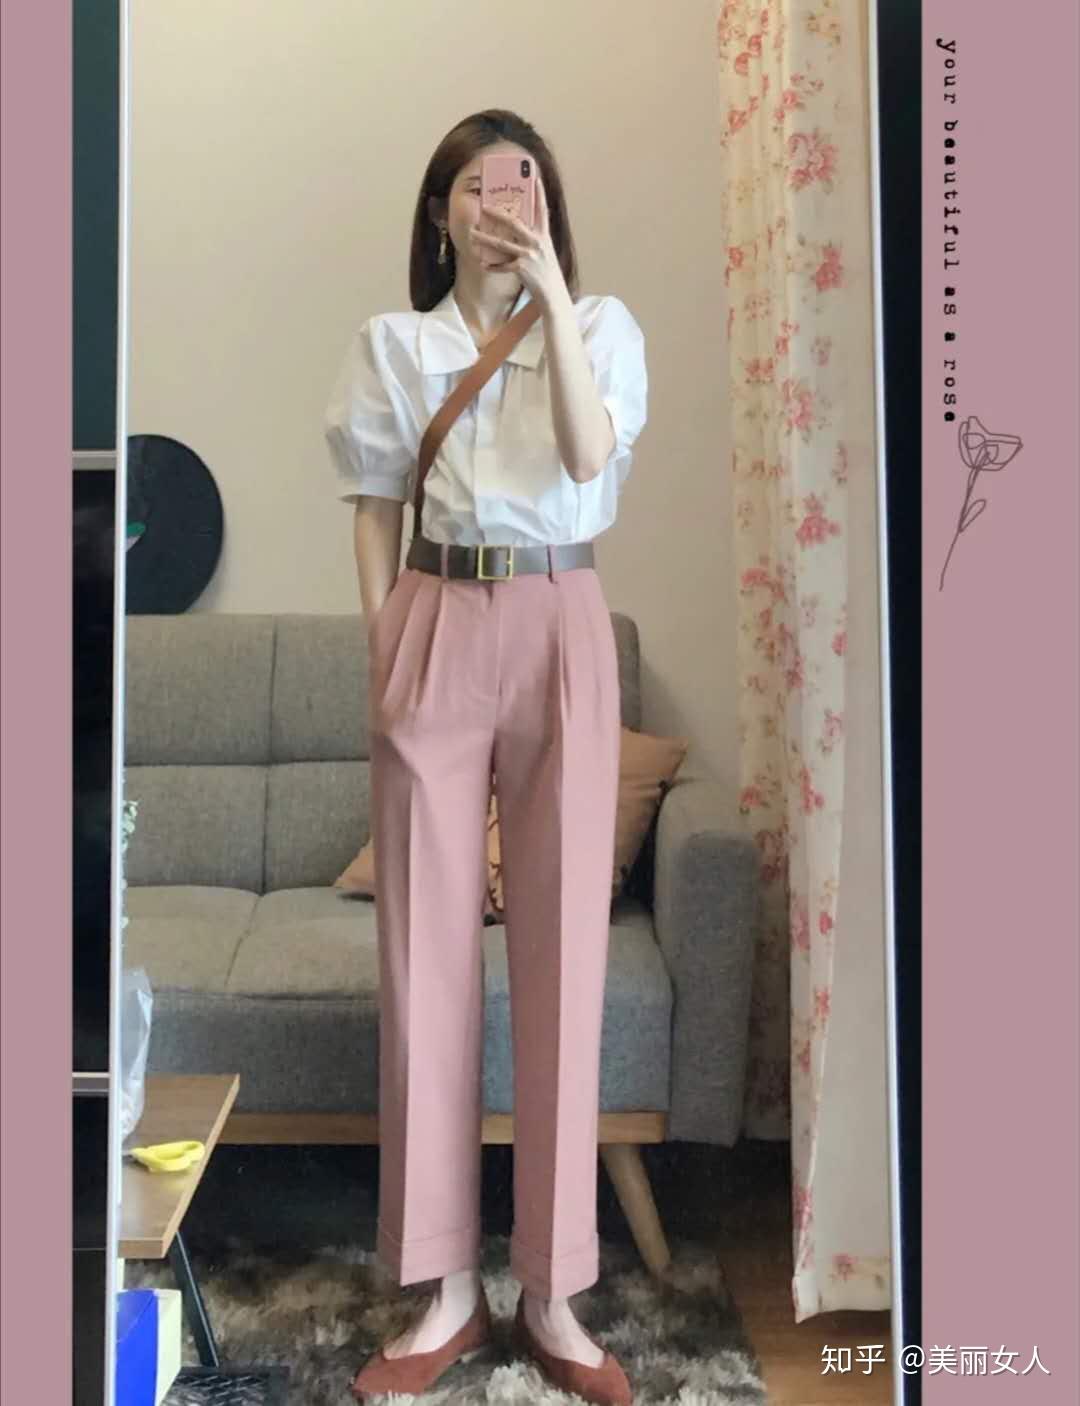 粉色裤子适合搭配什么颜色的衣服 - 知乎